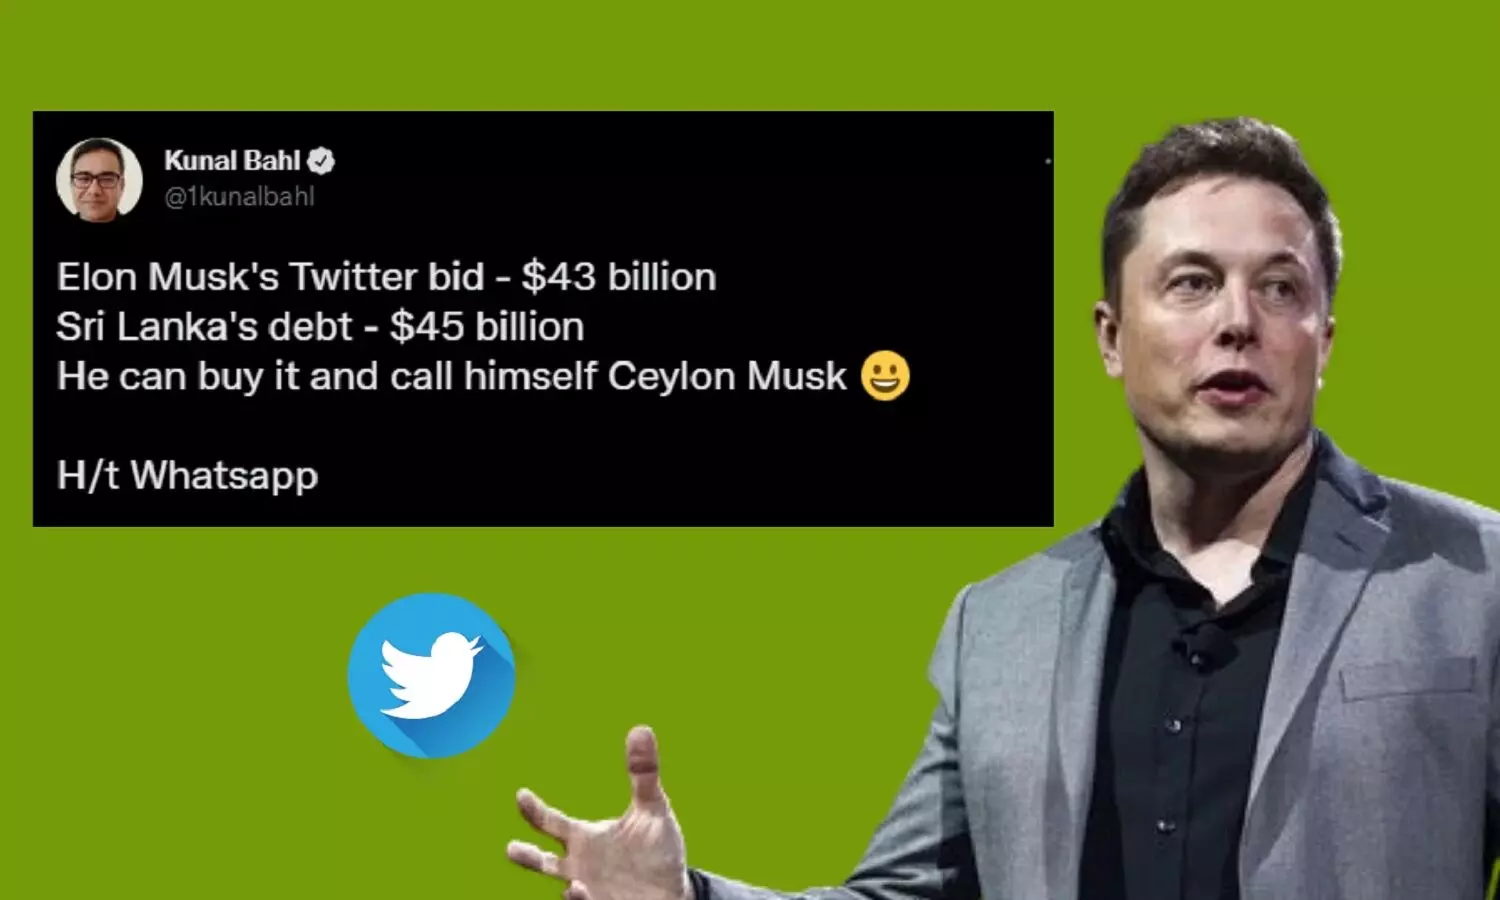 Elon Musk ने Twitter को खरीदने का ऑफर दिया तो Snapdeal के CEO ने कहा श्रीलंका क्यों नहीं खरीद लेते